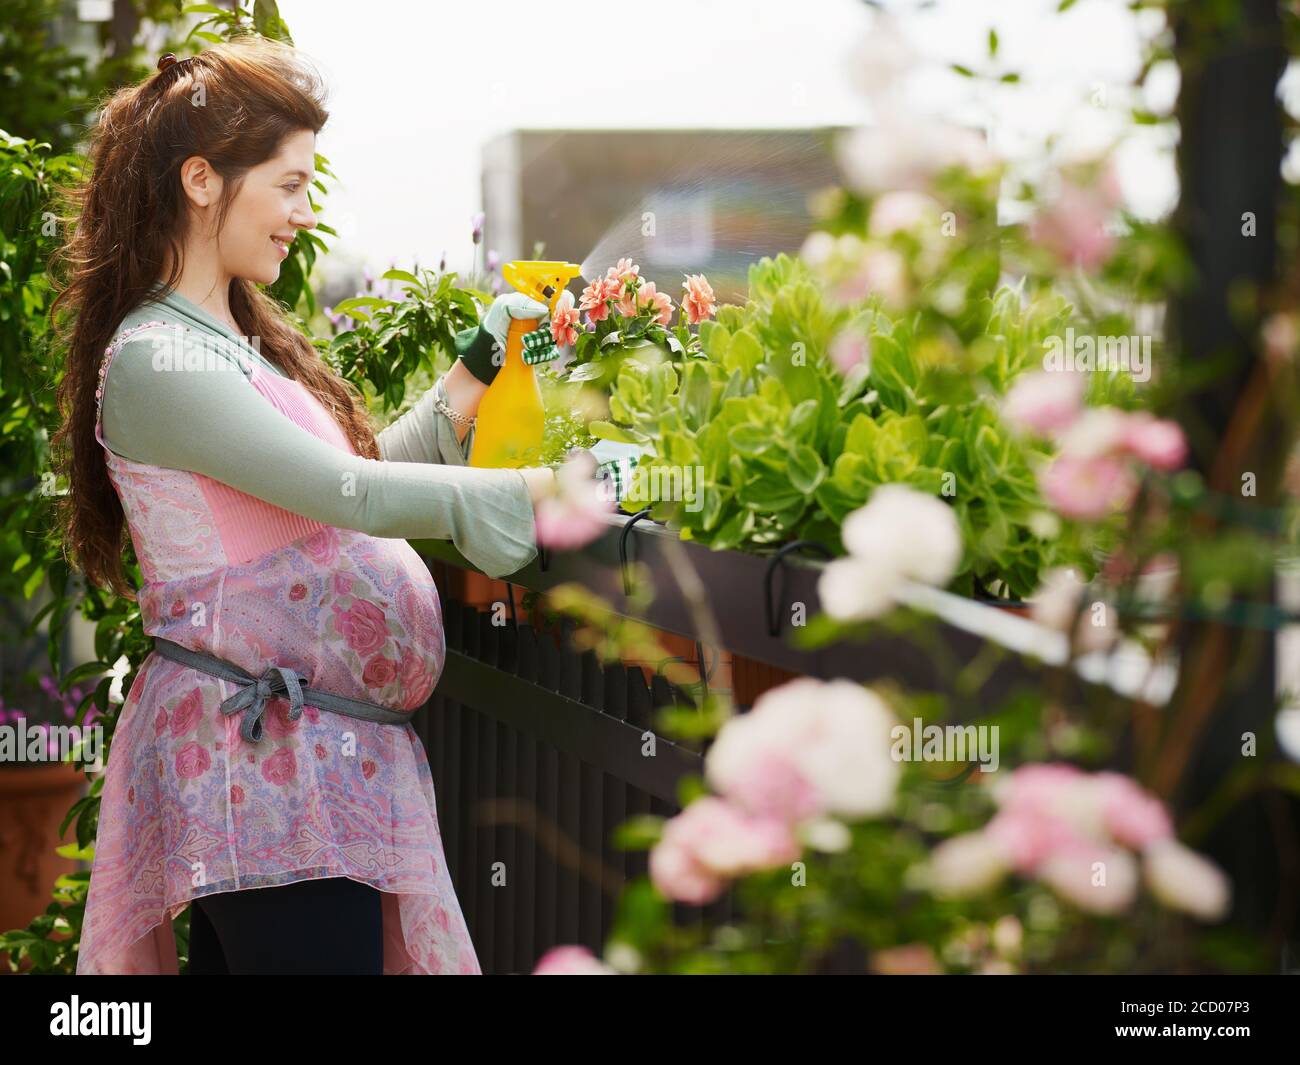 Jeune femme enceinte pulvérisant de l'eau sur des plantes et des fleurs Banque D'Images